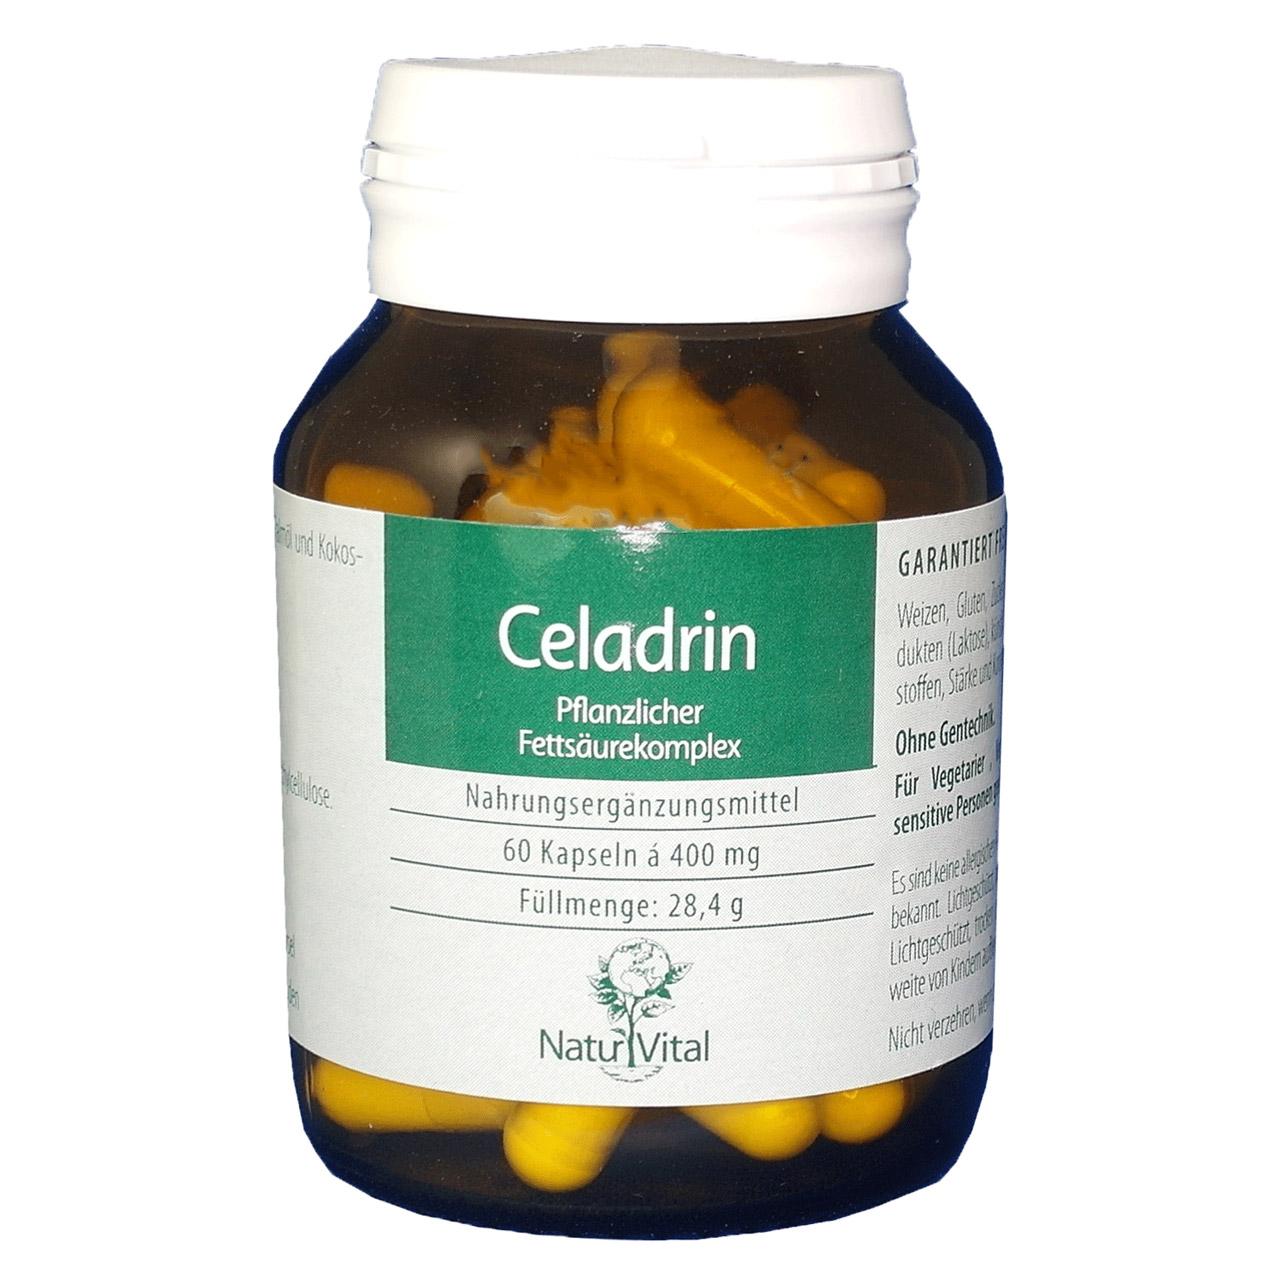 Celadrin von Natur Vital beinhaltet 60 Kapseln